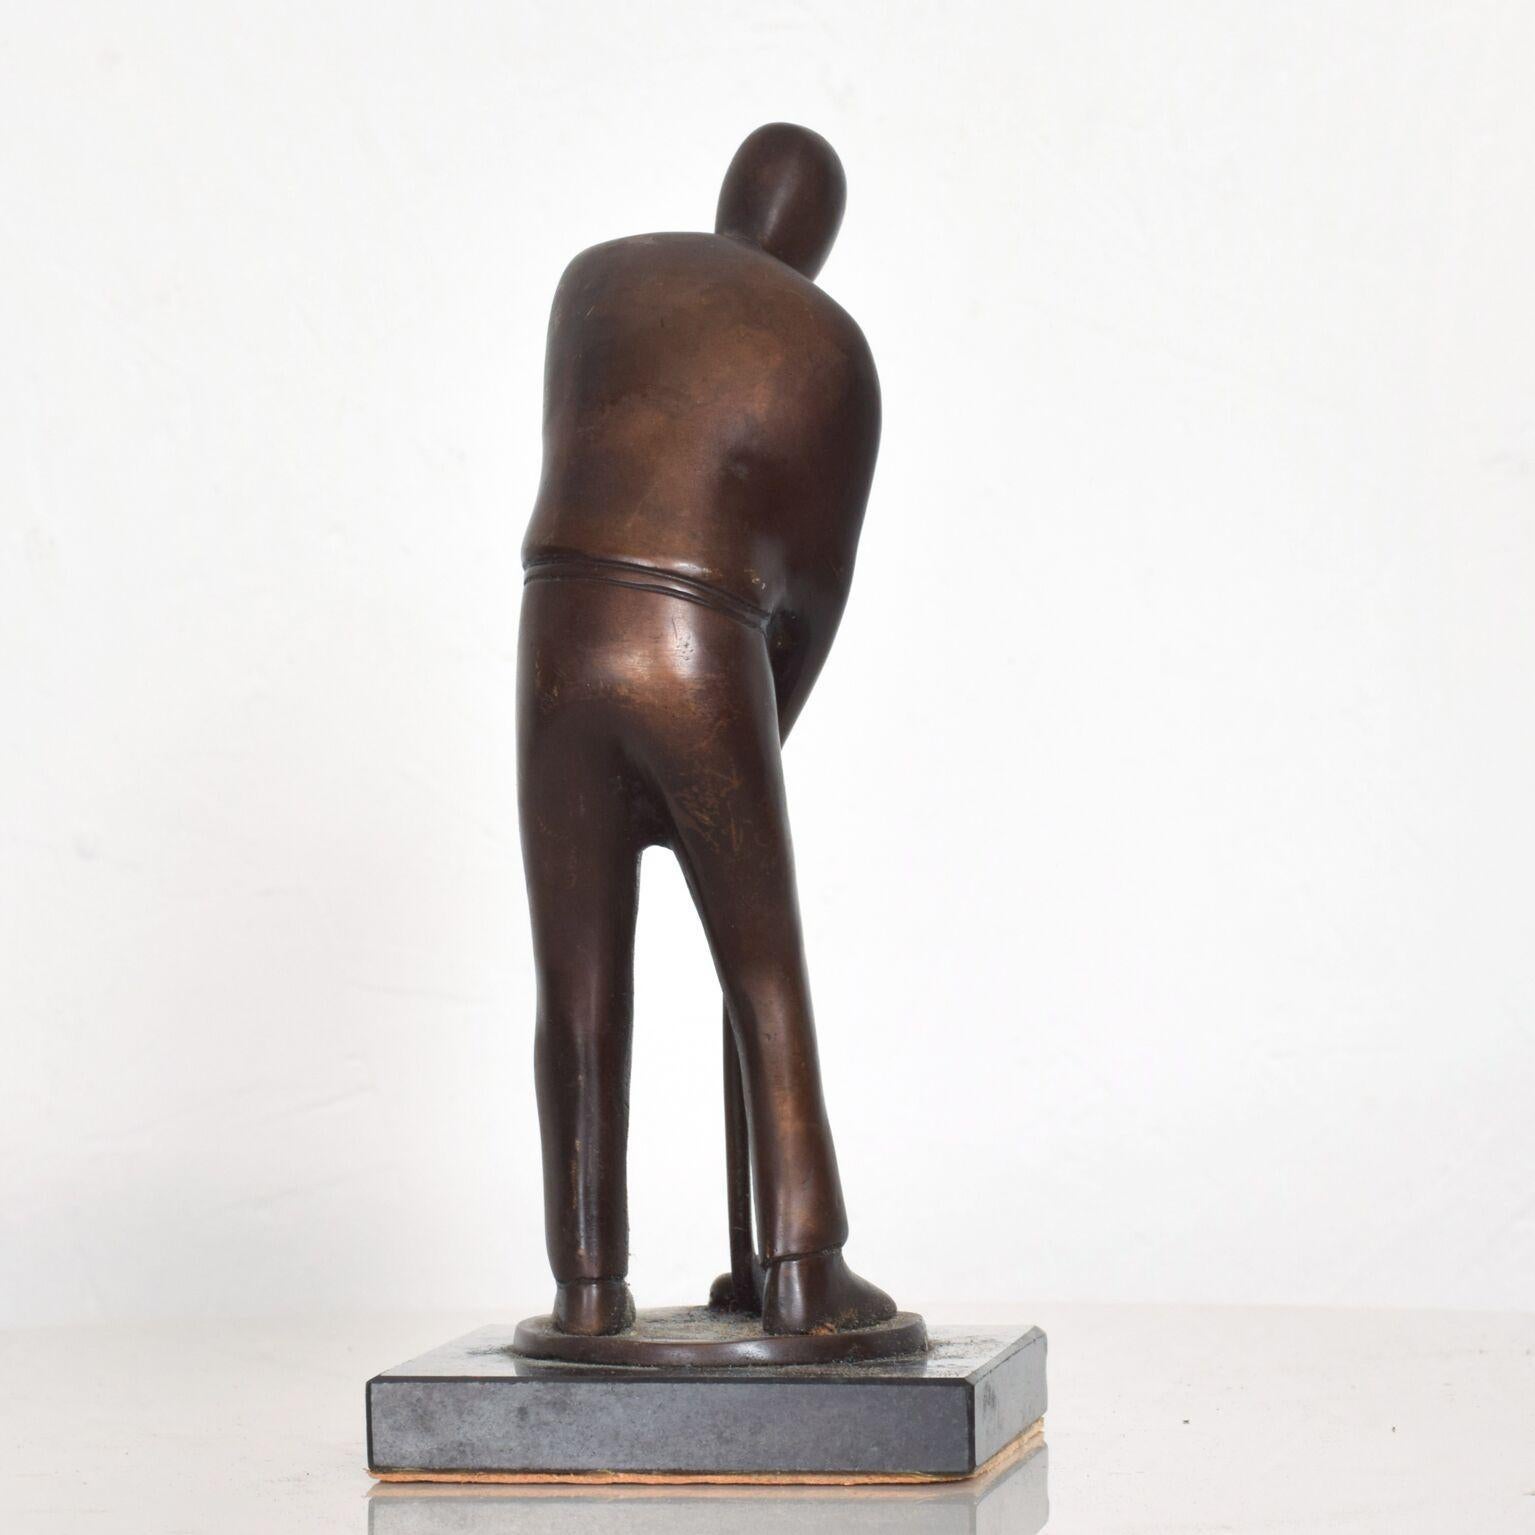 North American Modern Art Abstract Bronze Sculpture Faceless Golf Player Statue